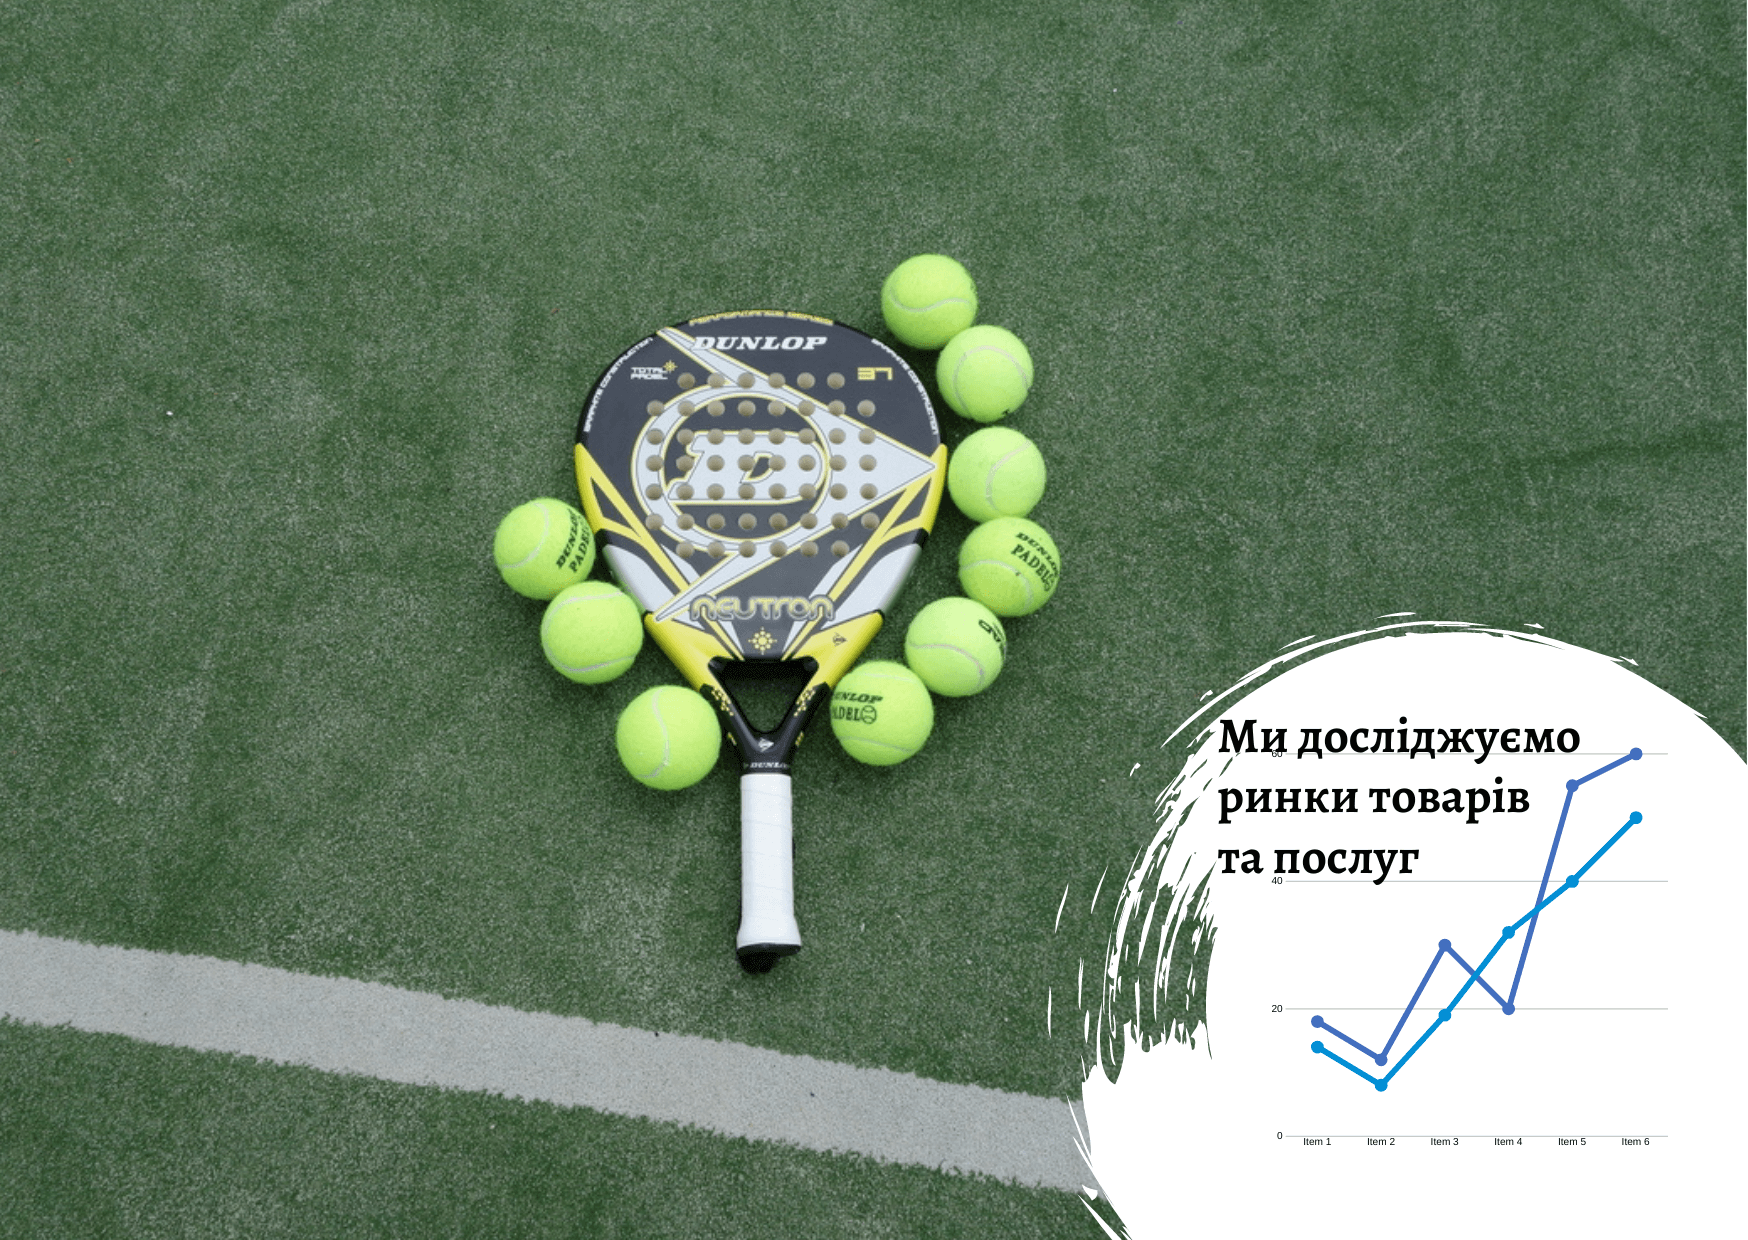 Рынок падл-тенниса в Украине: новый тренд 